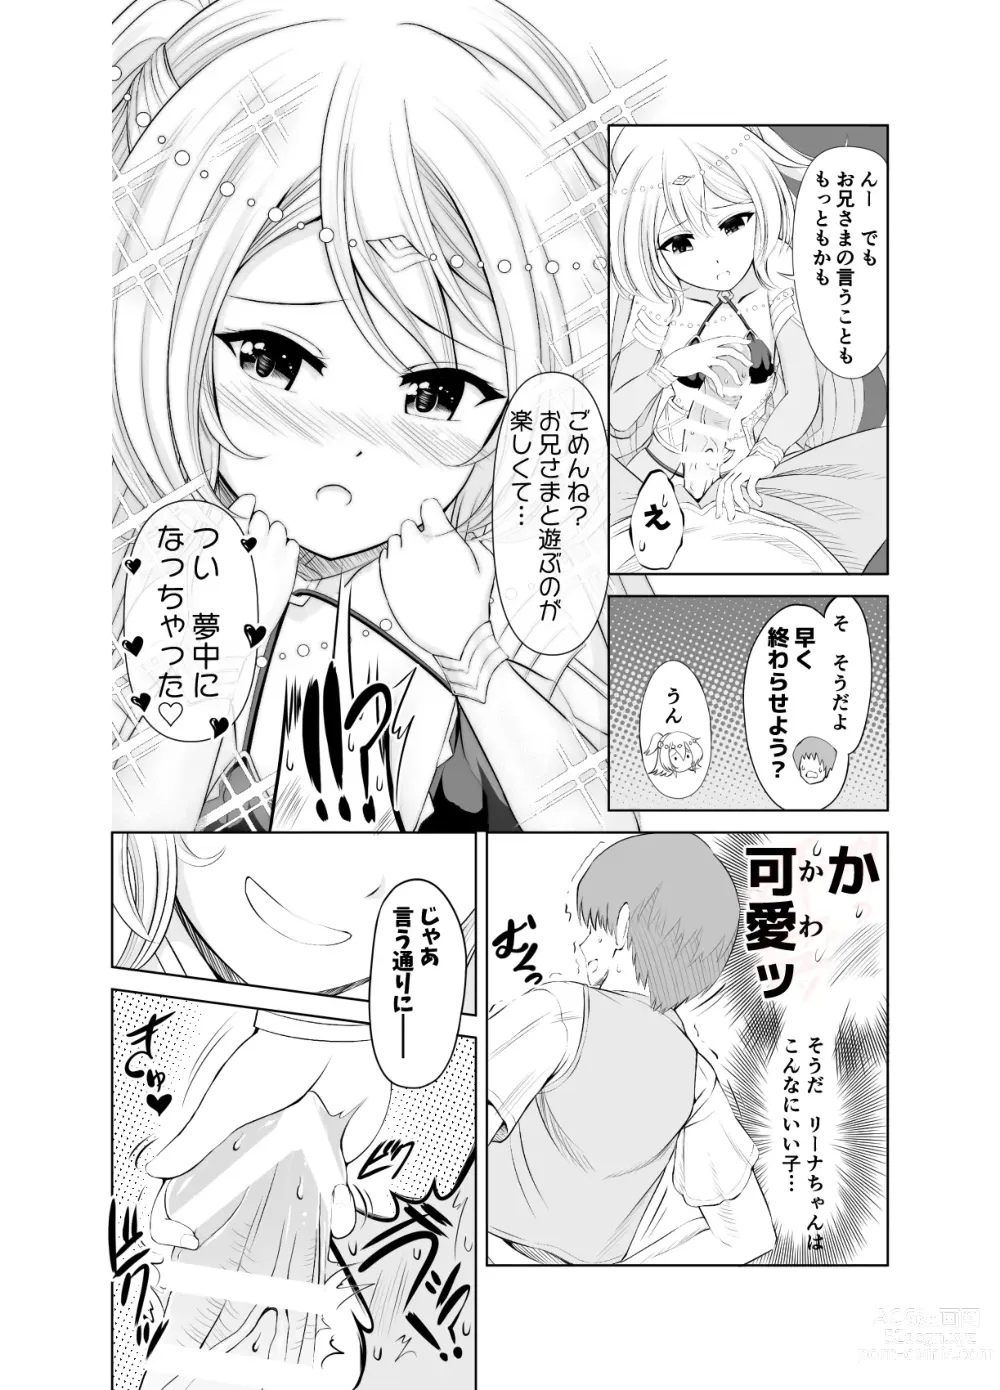 Page 4 of doujinshi Ama Zeme ~Saioshi no Koakuma Imouto-kei Odoriko ni Omocha ni Sareru Hibi no Hitomaku~